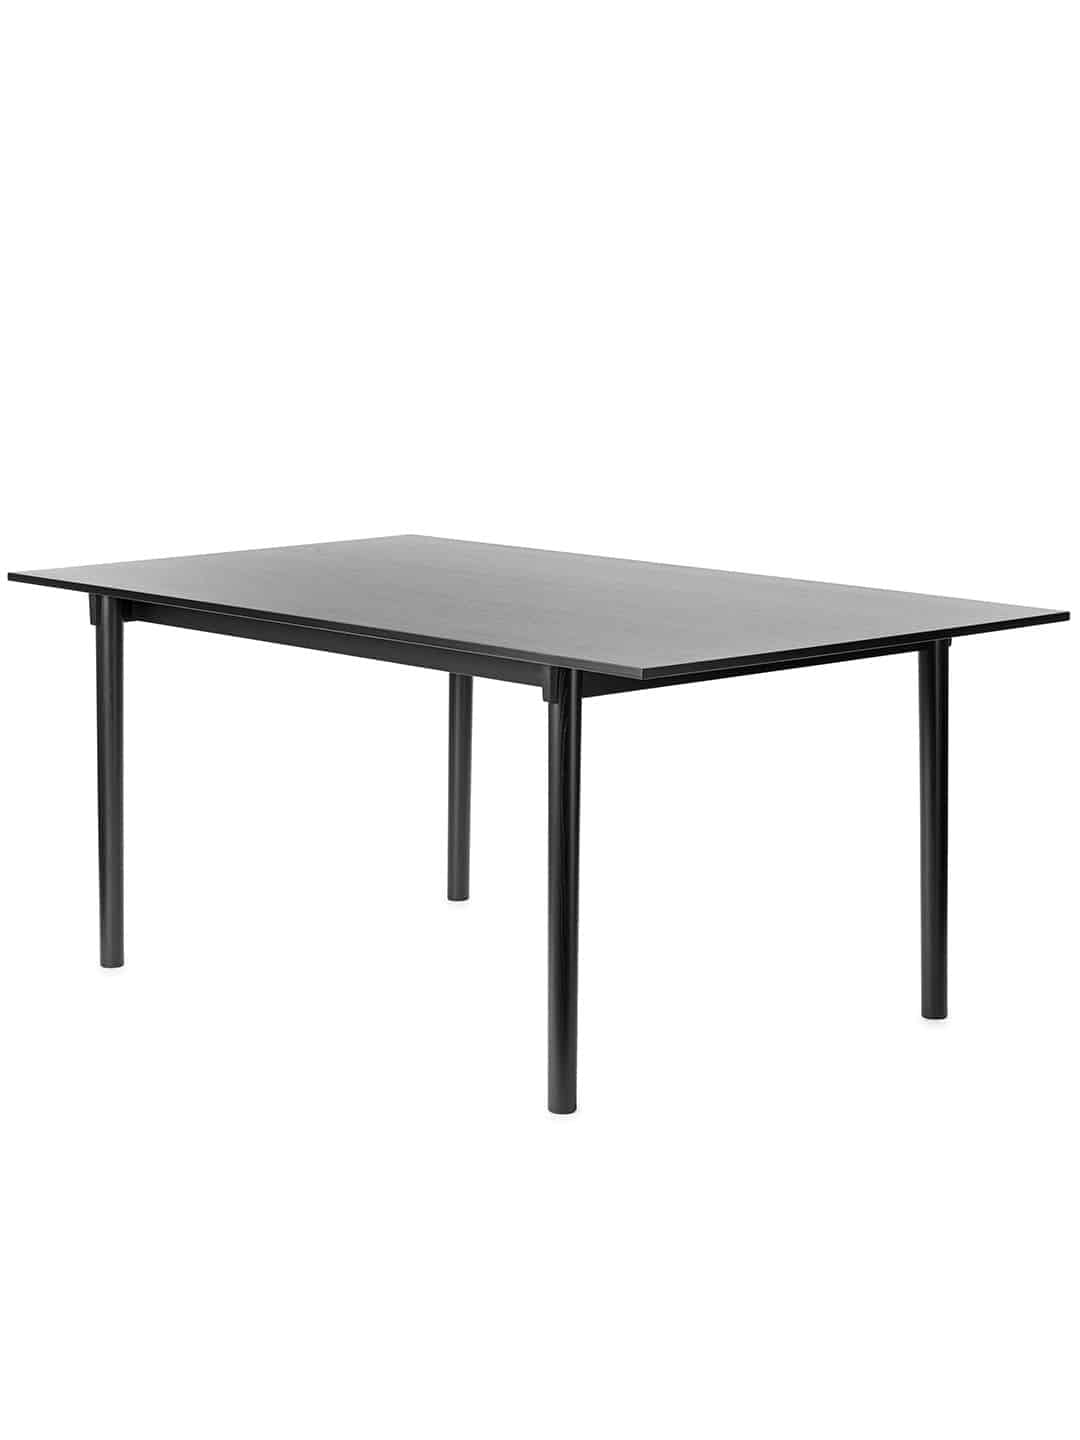 Обеденный стол Garsnas TAK премиум класса черного цвета